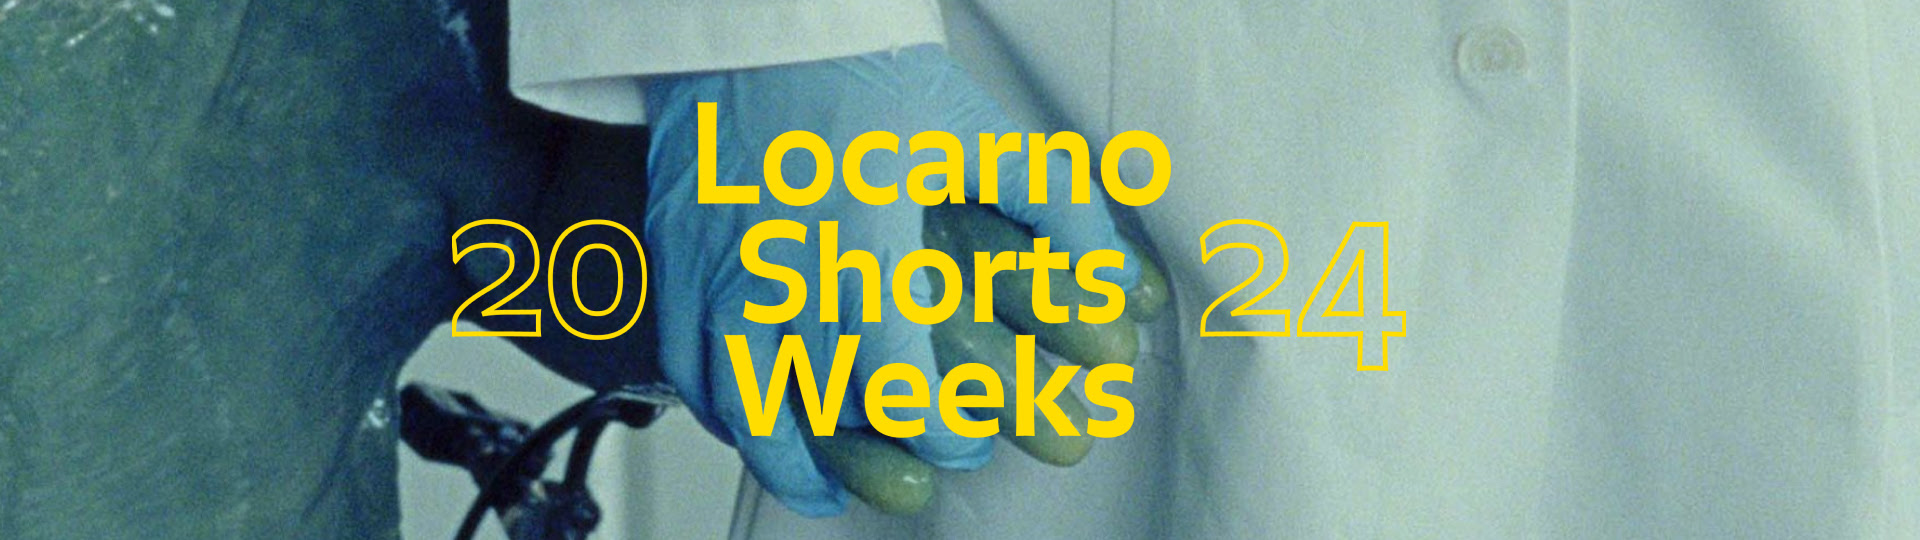 Ritornano le Locarno Shorts Weeks con una selezione di corti in streaming online per tutti i 29 giorni di febbraio